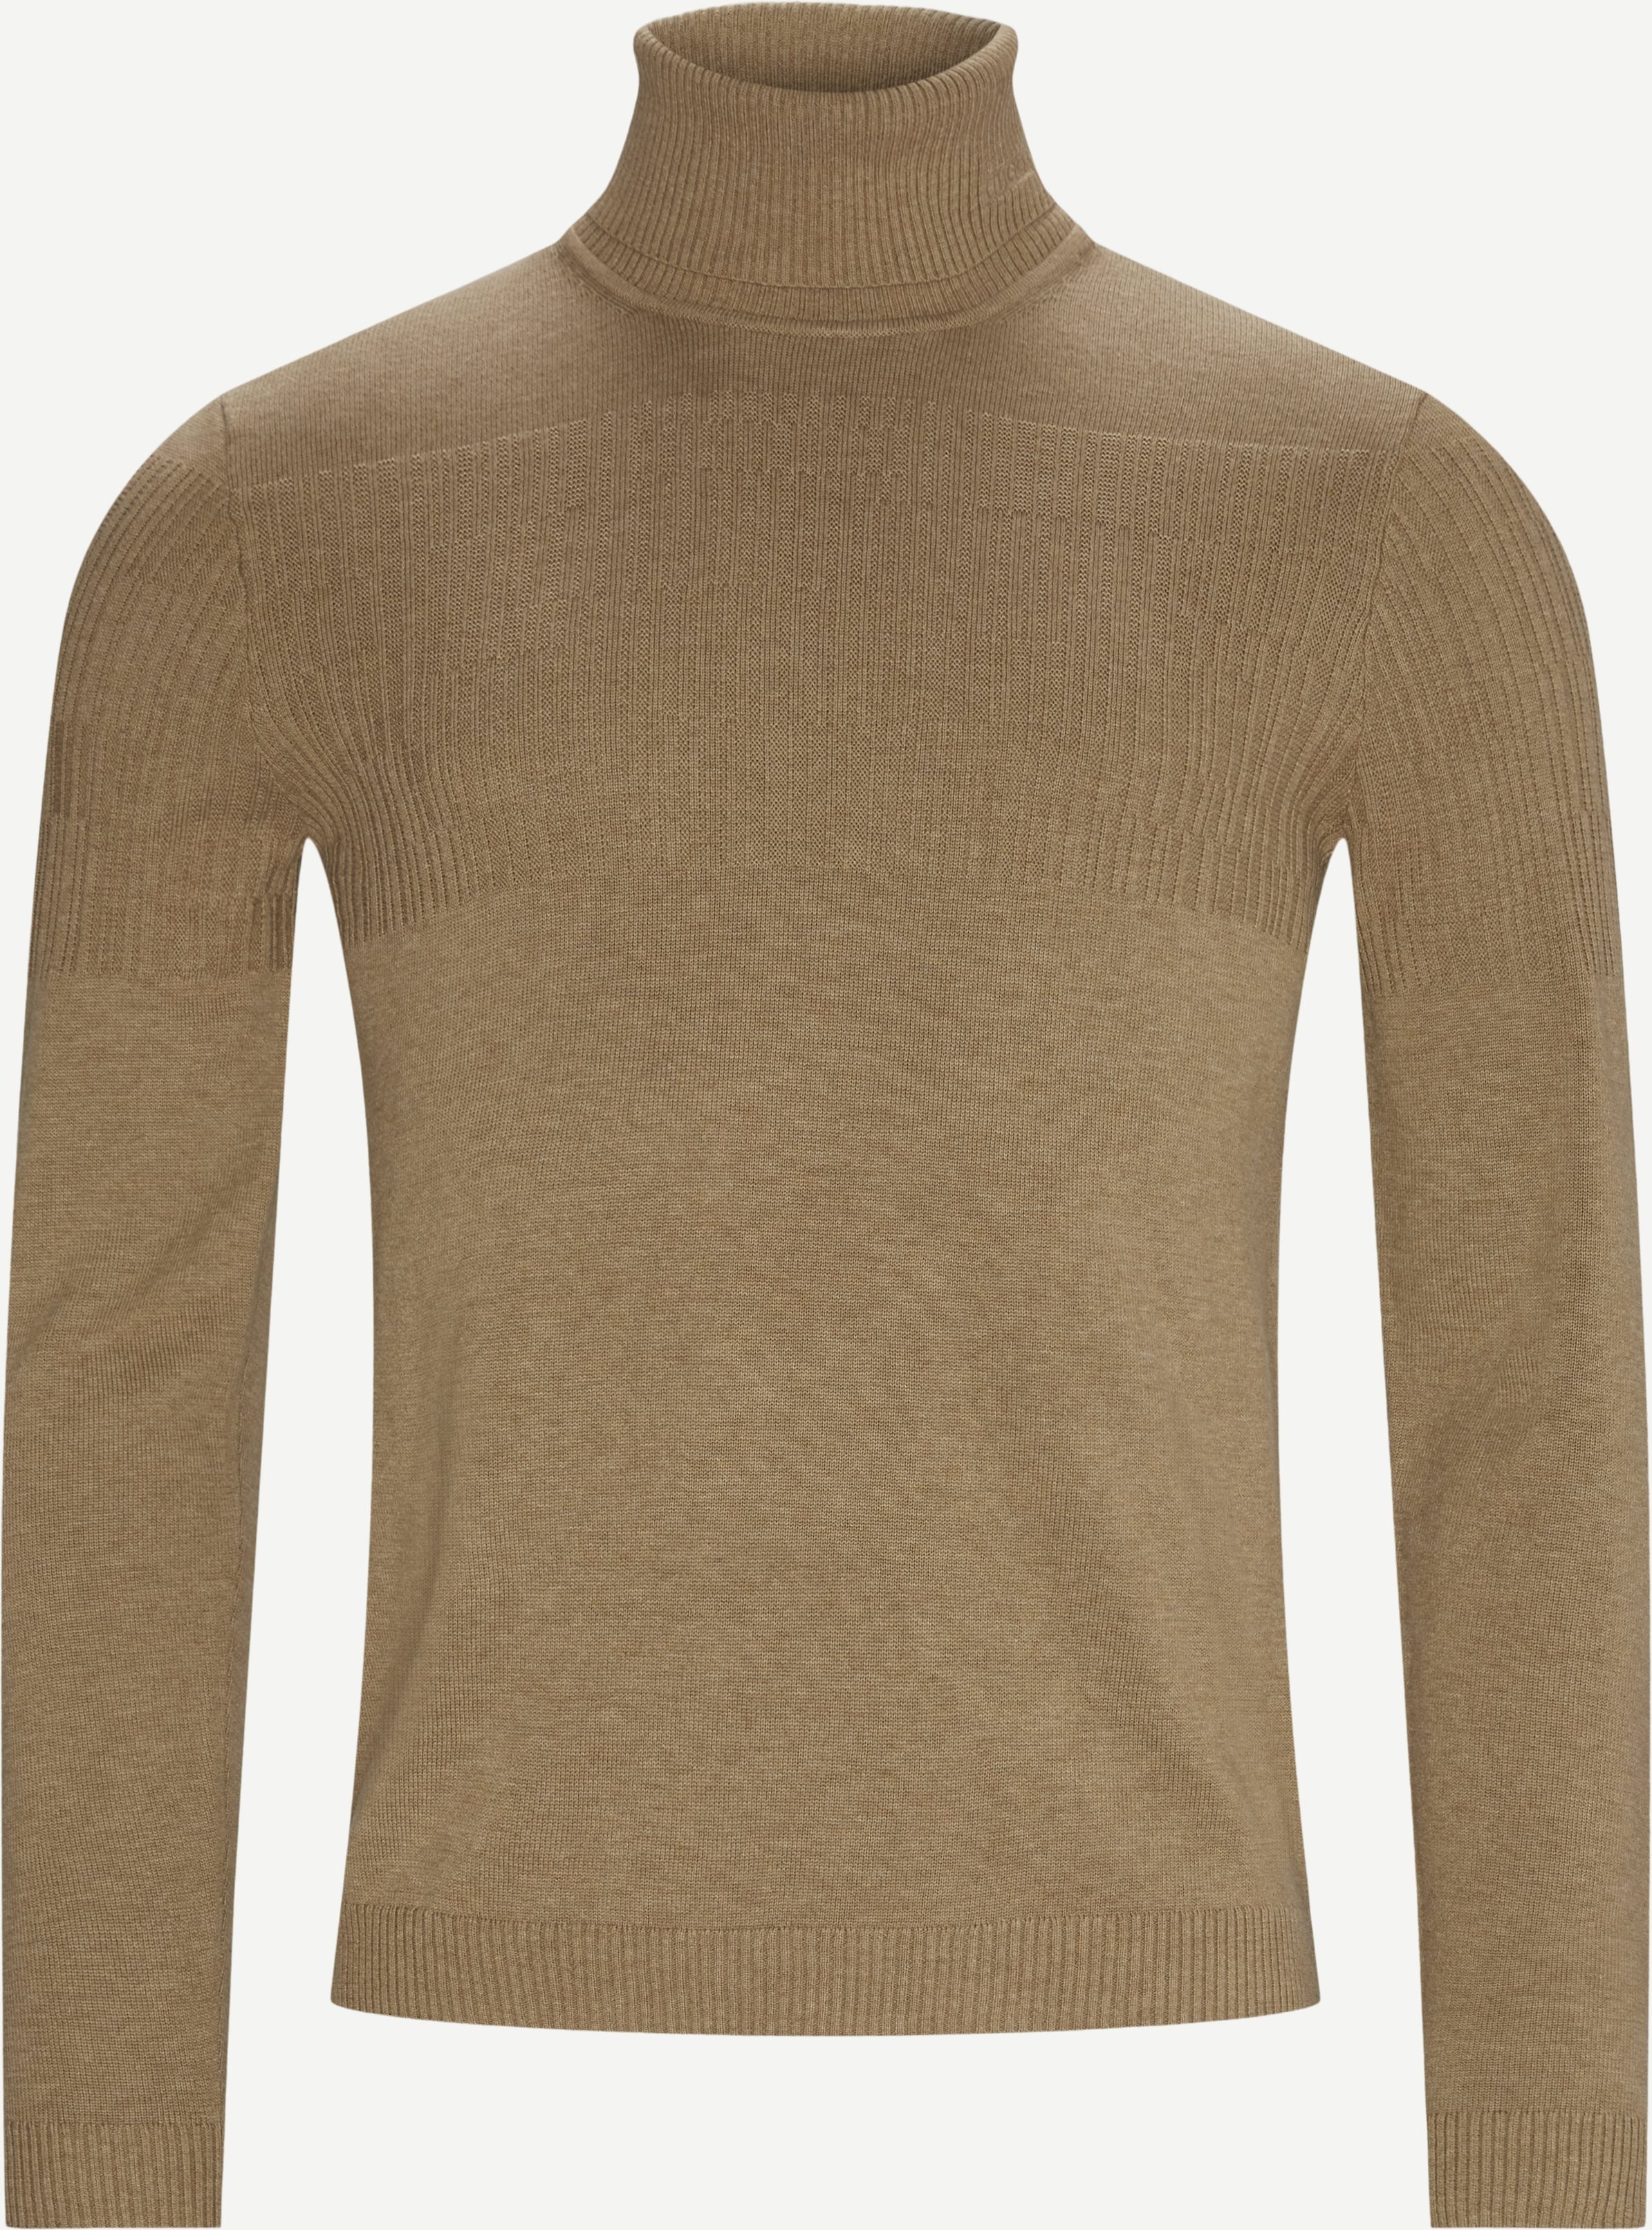 Siseon Rollneck Sweater - Knitwear - Slim fit - Brown